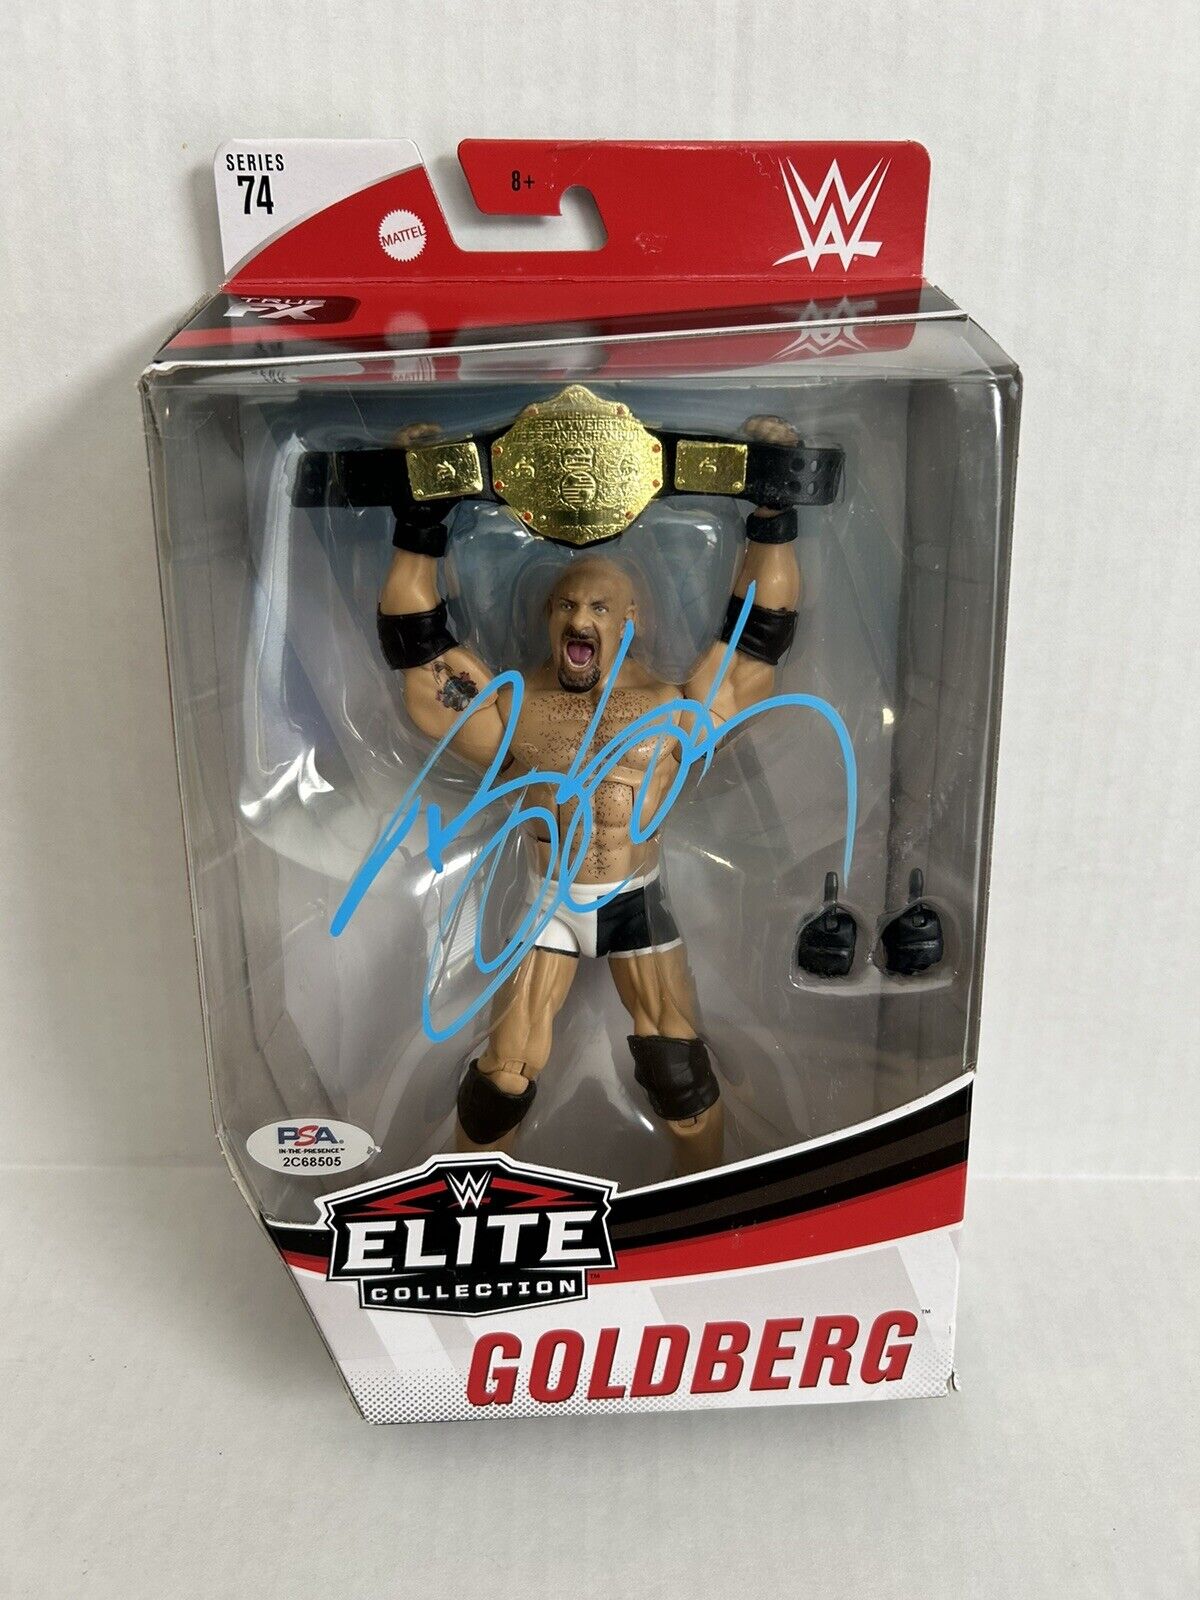 GOLDBERG Signed WWE Elite Collection Big Gold Belt Mattel Figure 74 PSA/DNA